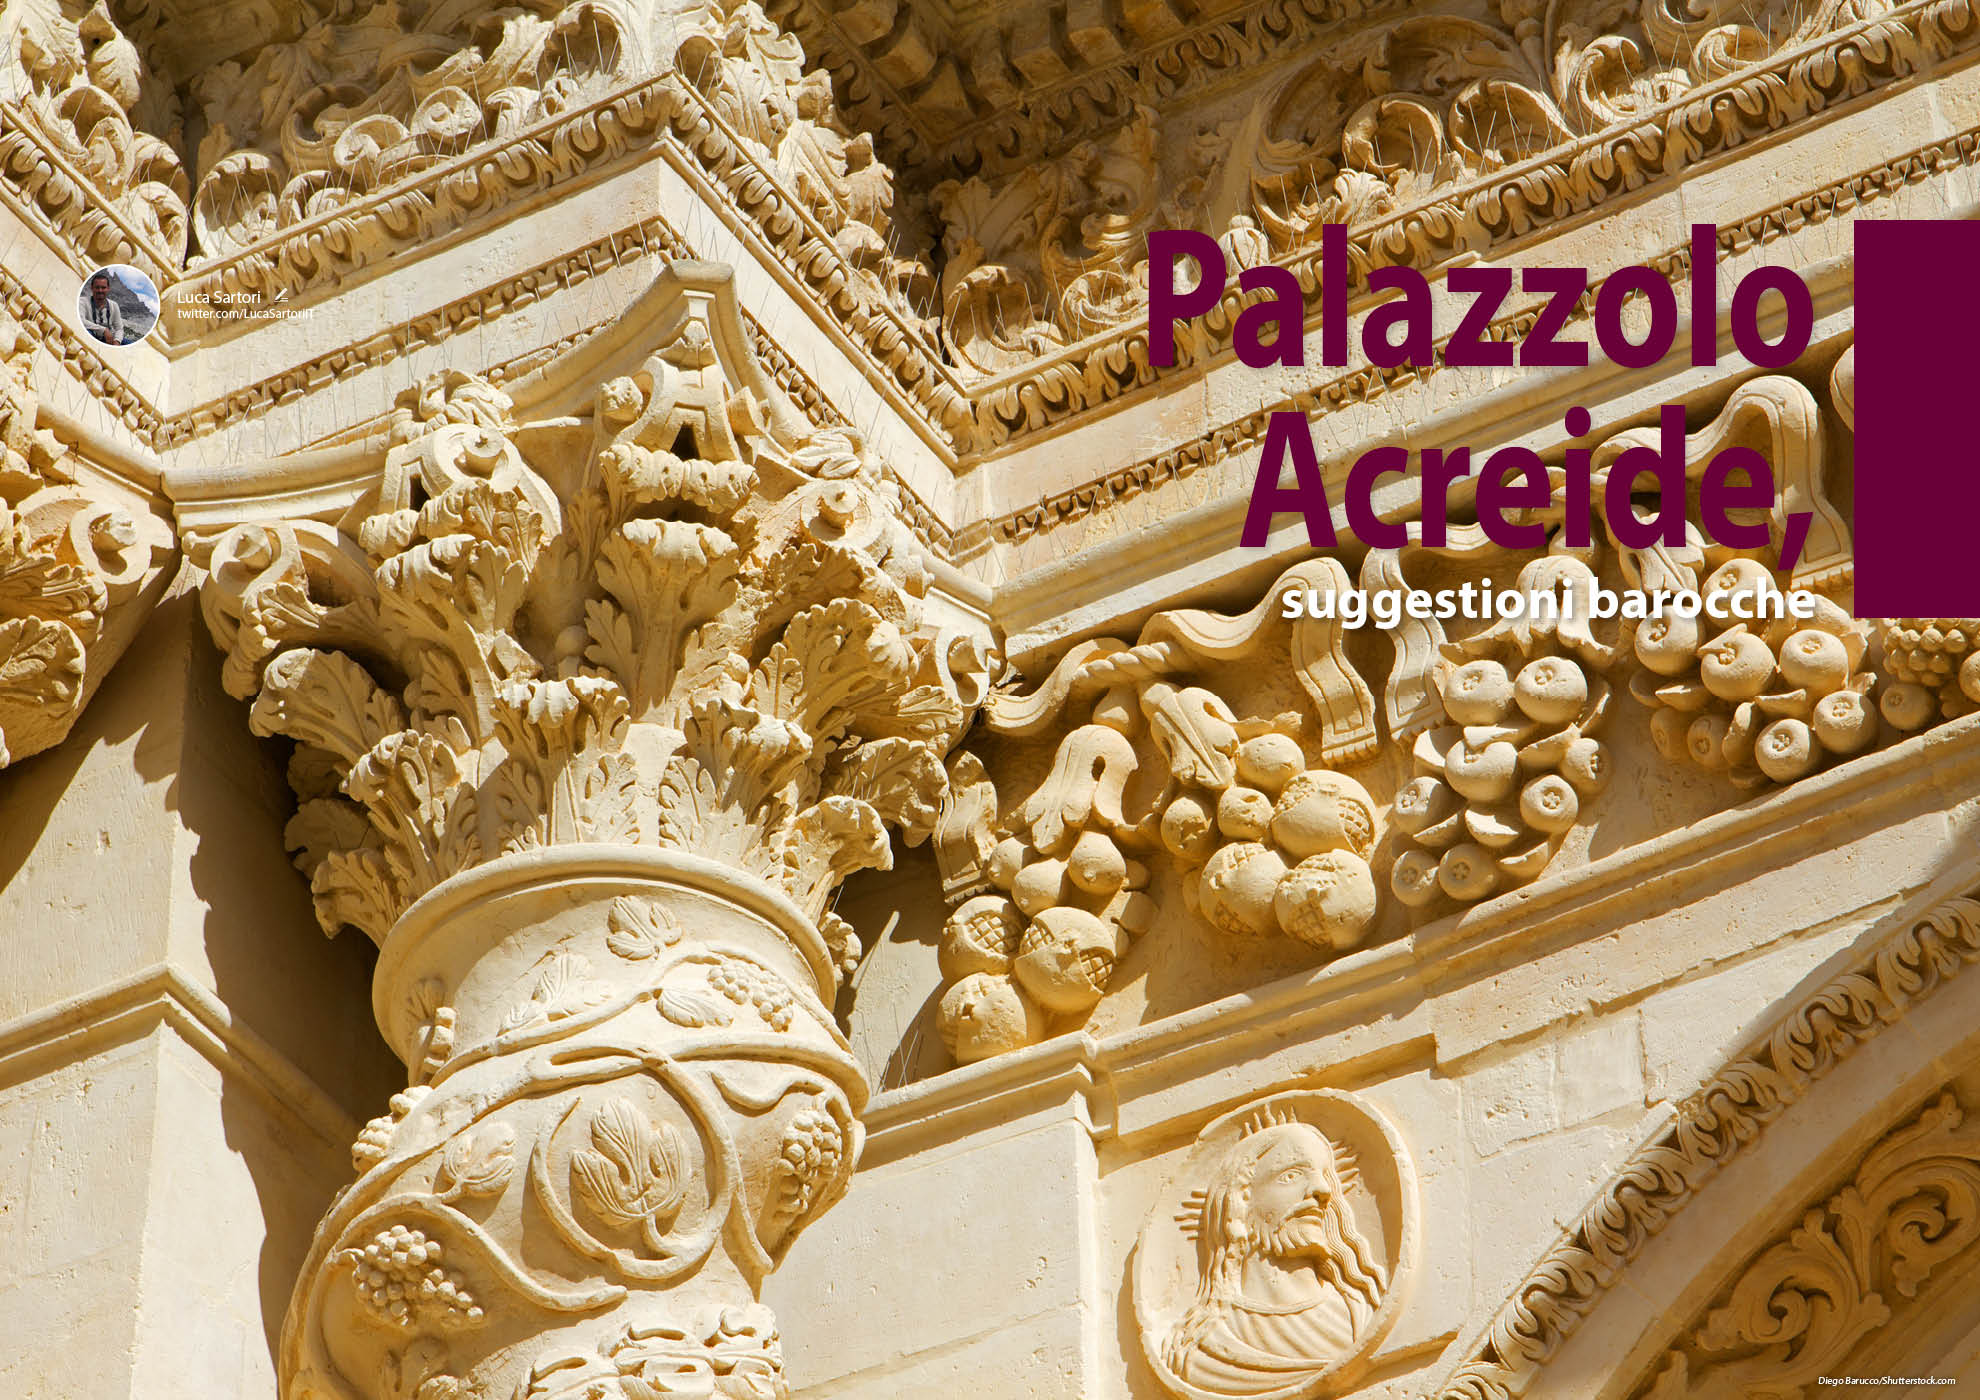 e-borghi travel 11: Speciale UNESCO - Palazzolo Acreide, suggestioni barocche